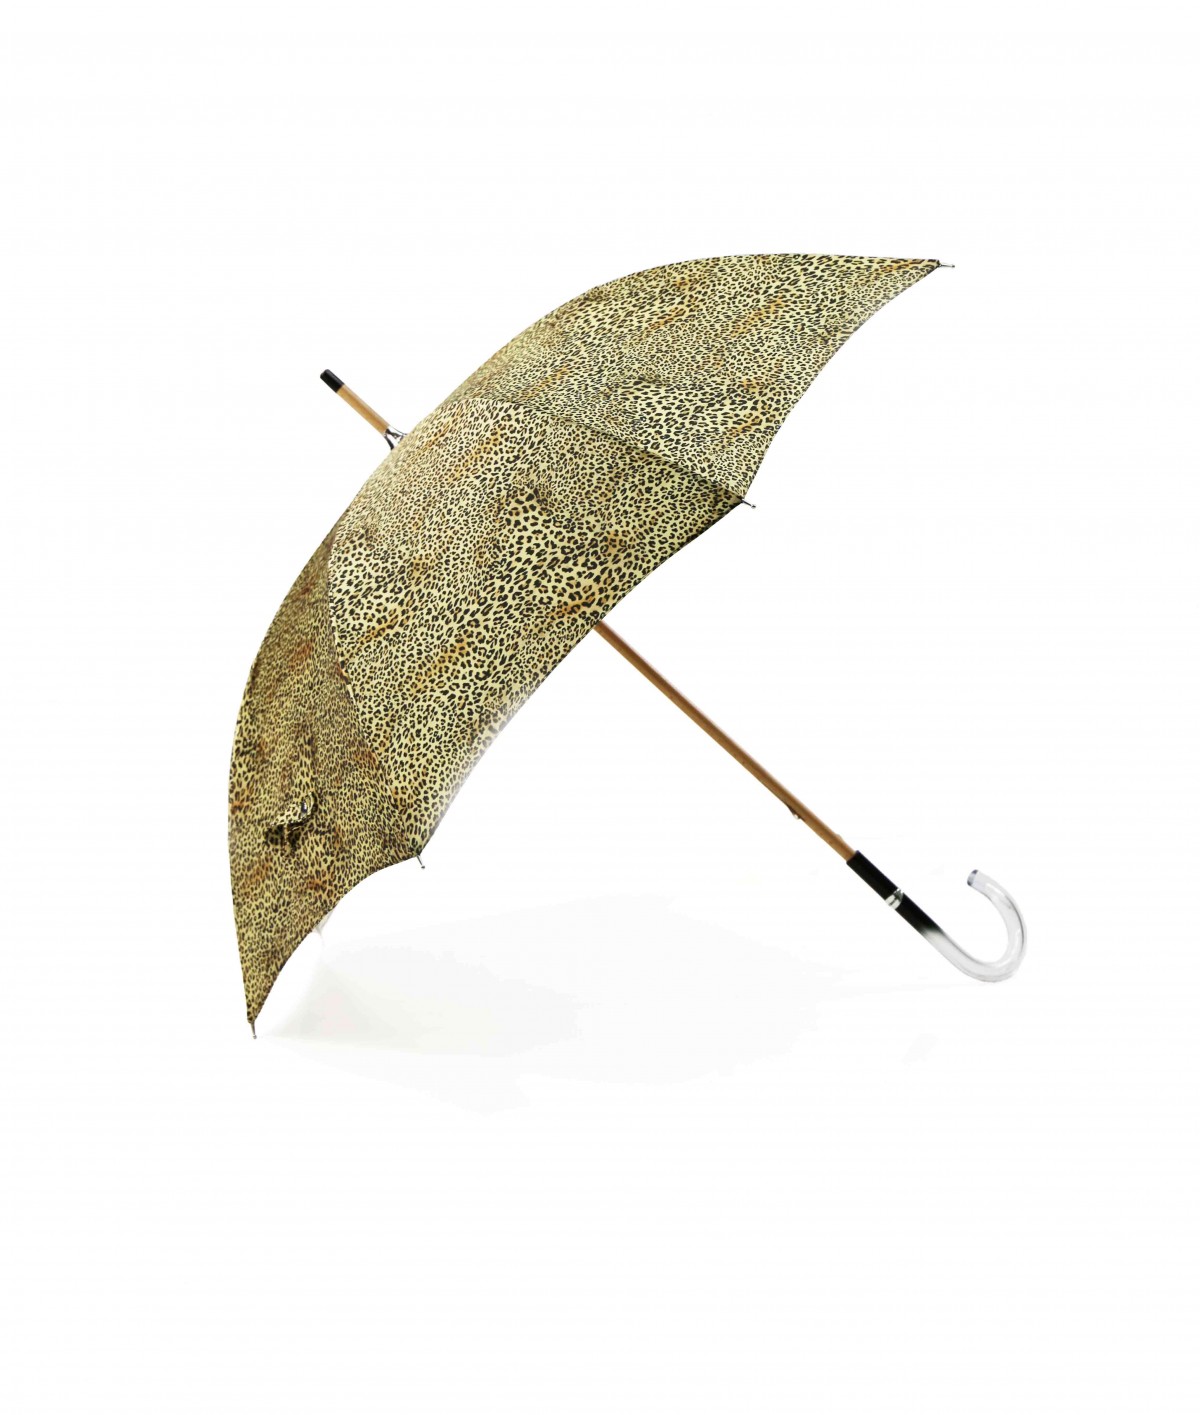 → Parapluie Satin Imprimé Fantaisie - Long Manuel N°11 - Made in France par Maison Pierre Vaux Fabricant Français de Parapluie